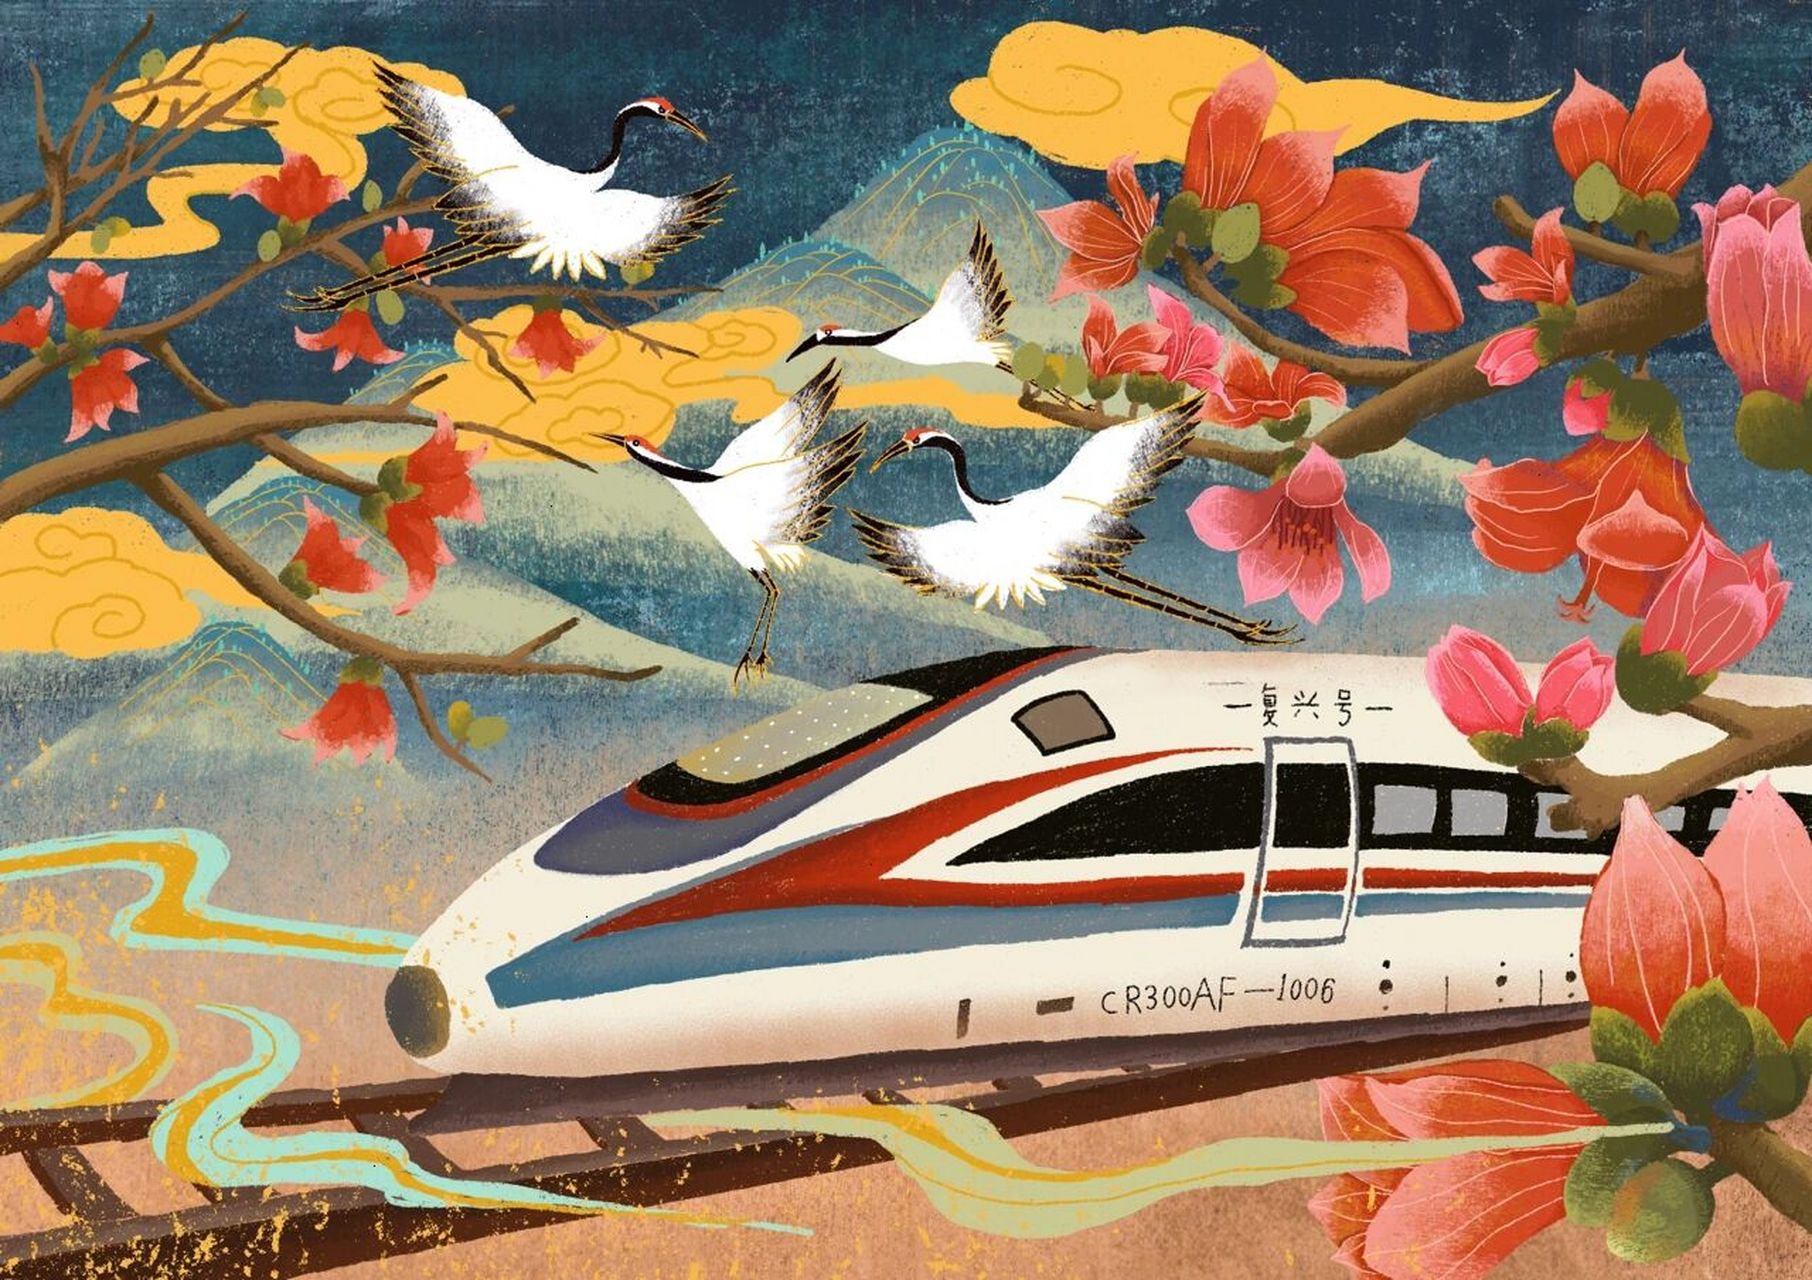 海南高铁插画,复兴号来了 画面主体是行驶在木棉花下的高铁,算是开往